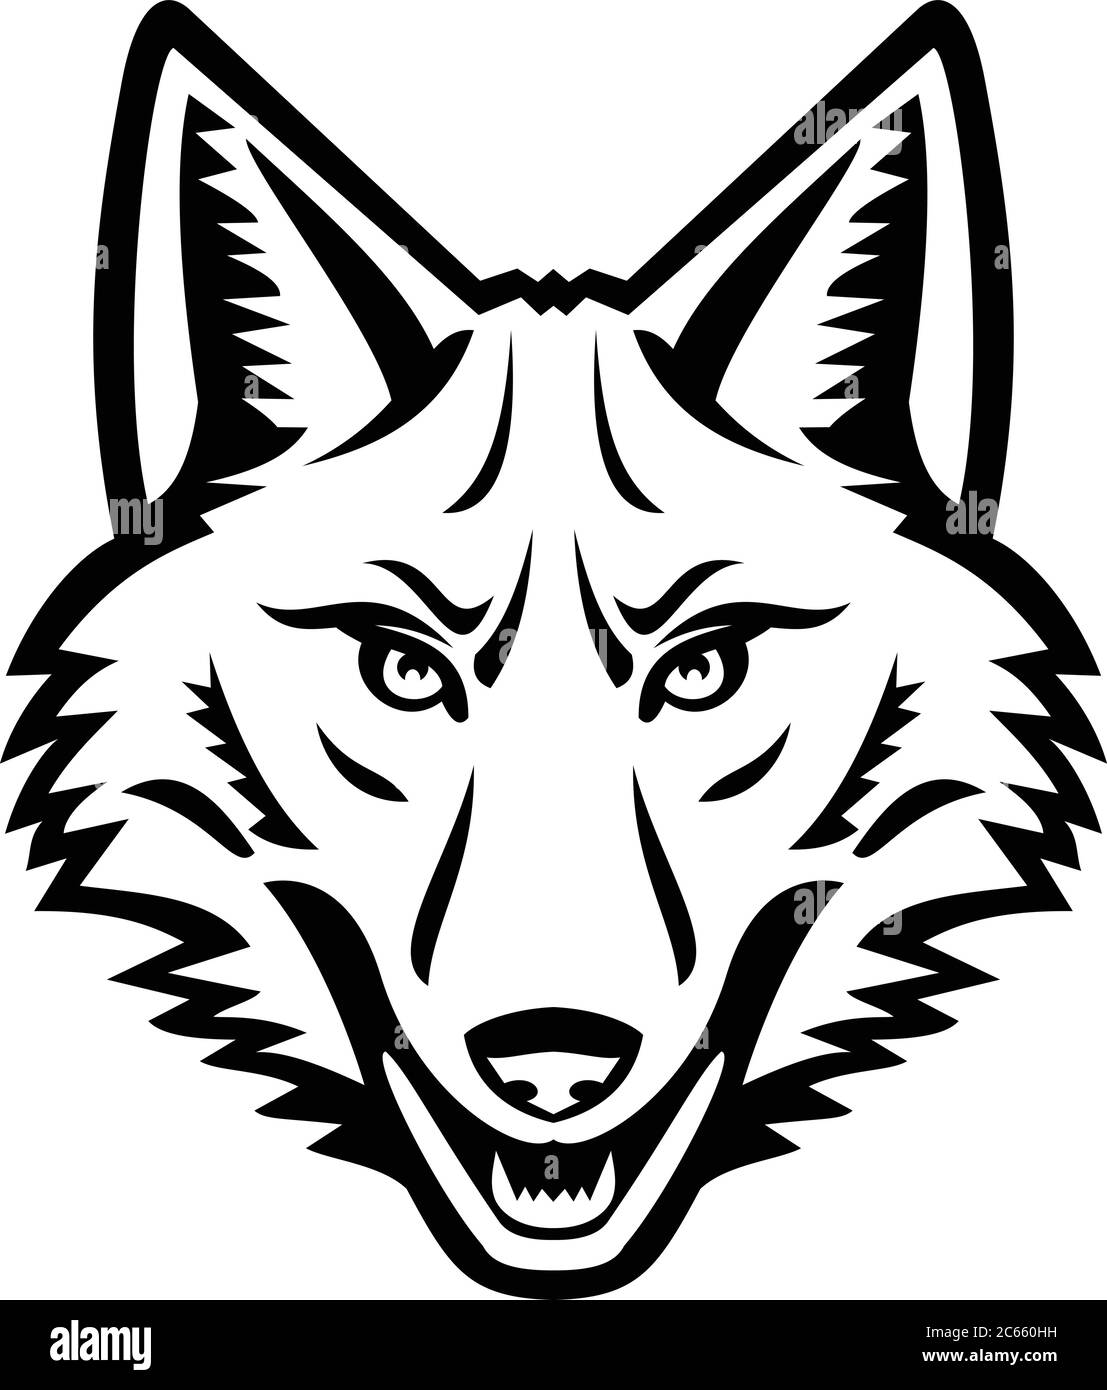 Mascotte noire et blanche, illustration de la tête d'un coyote ou de latrans canis, canine originaire d'Amérique du Nord, vue du front sur un backgroun isolé Illustration de Vecteur